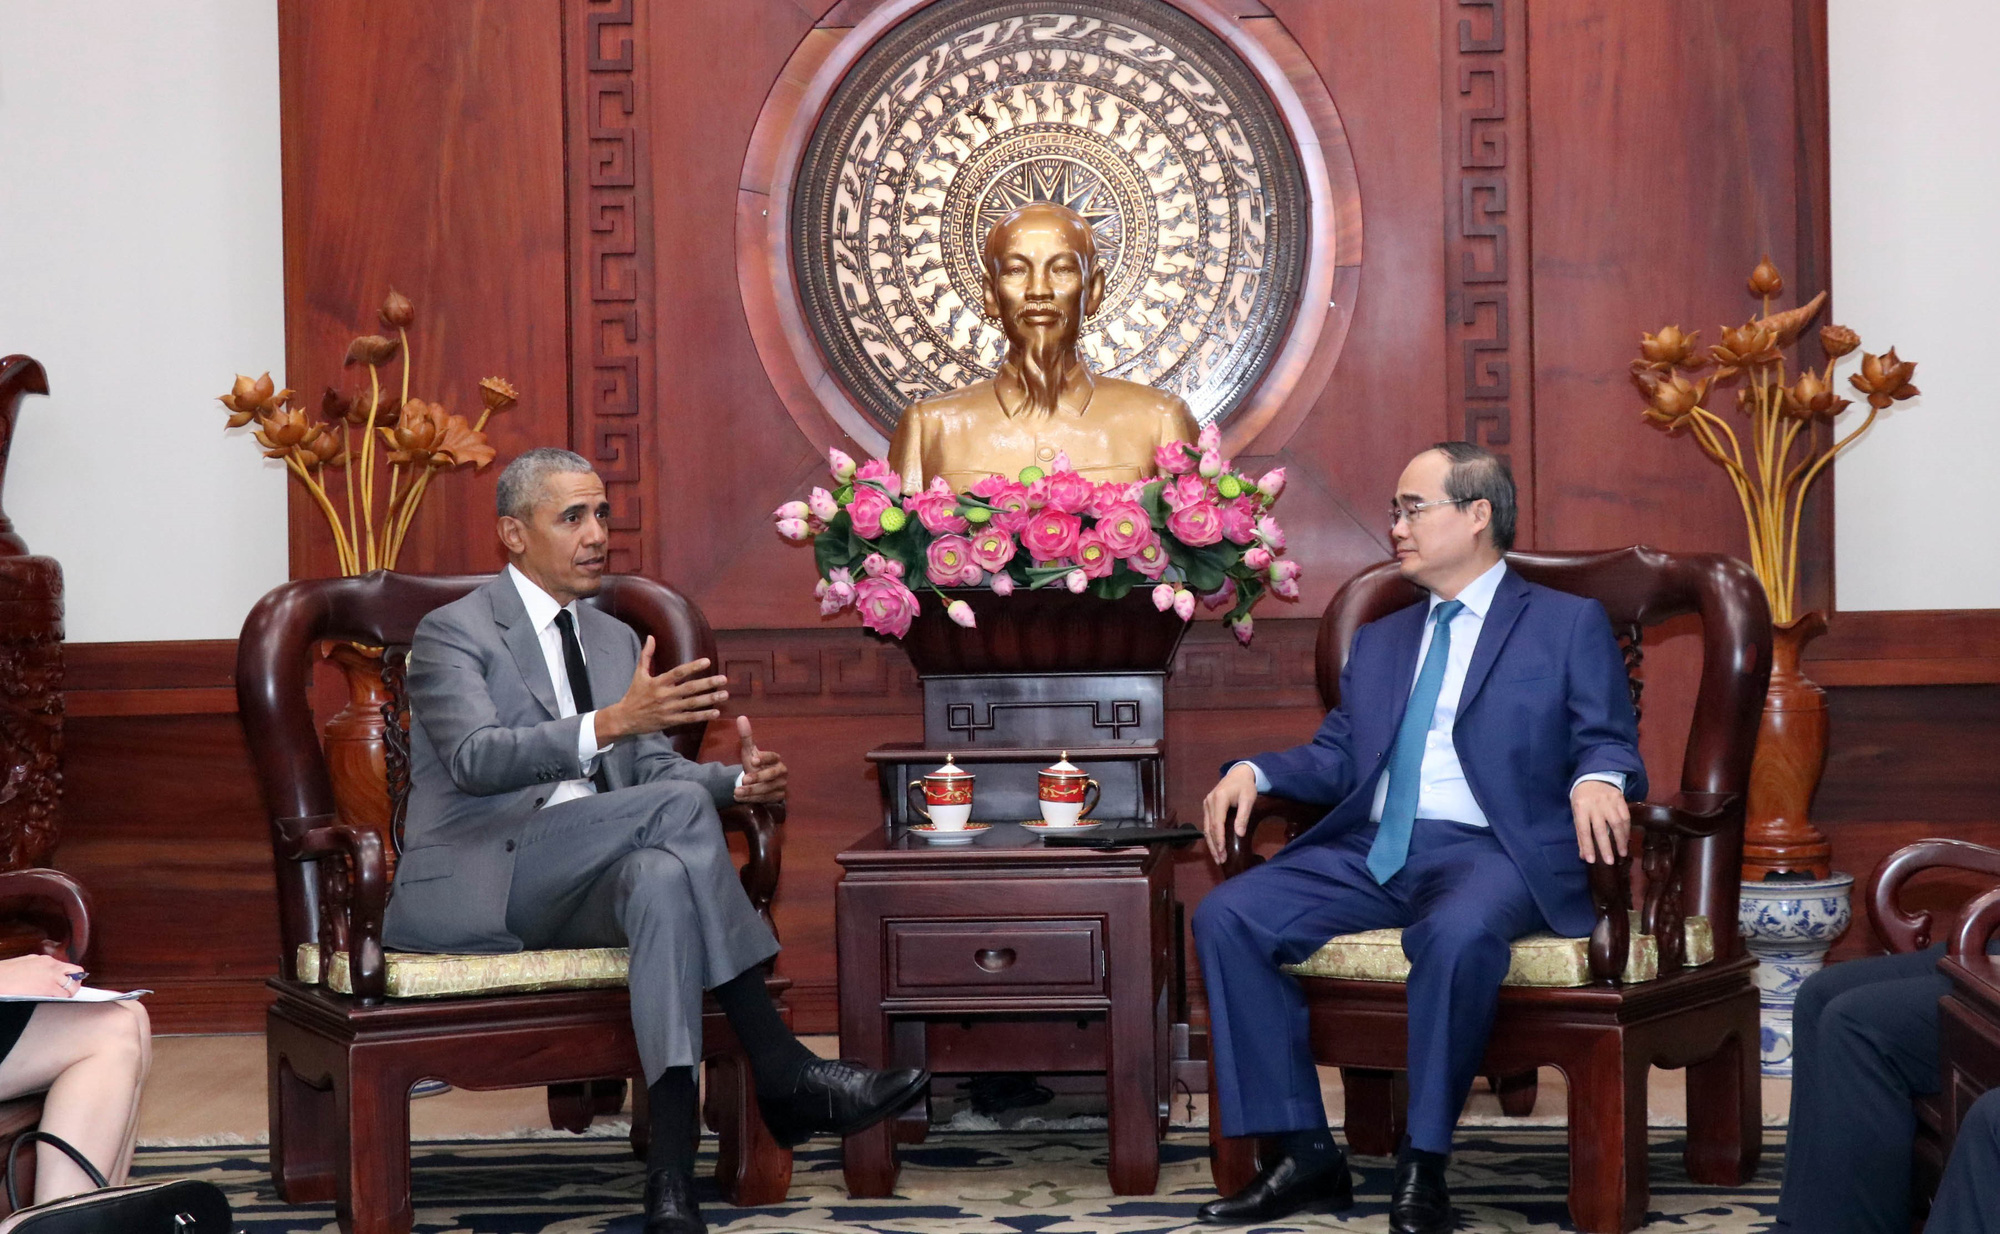 Barack Obama, Ho Chi Minh City Party chief talk Vietnam-U.S. ties